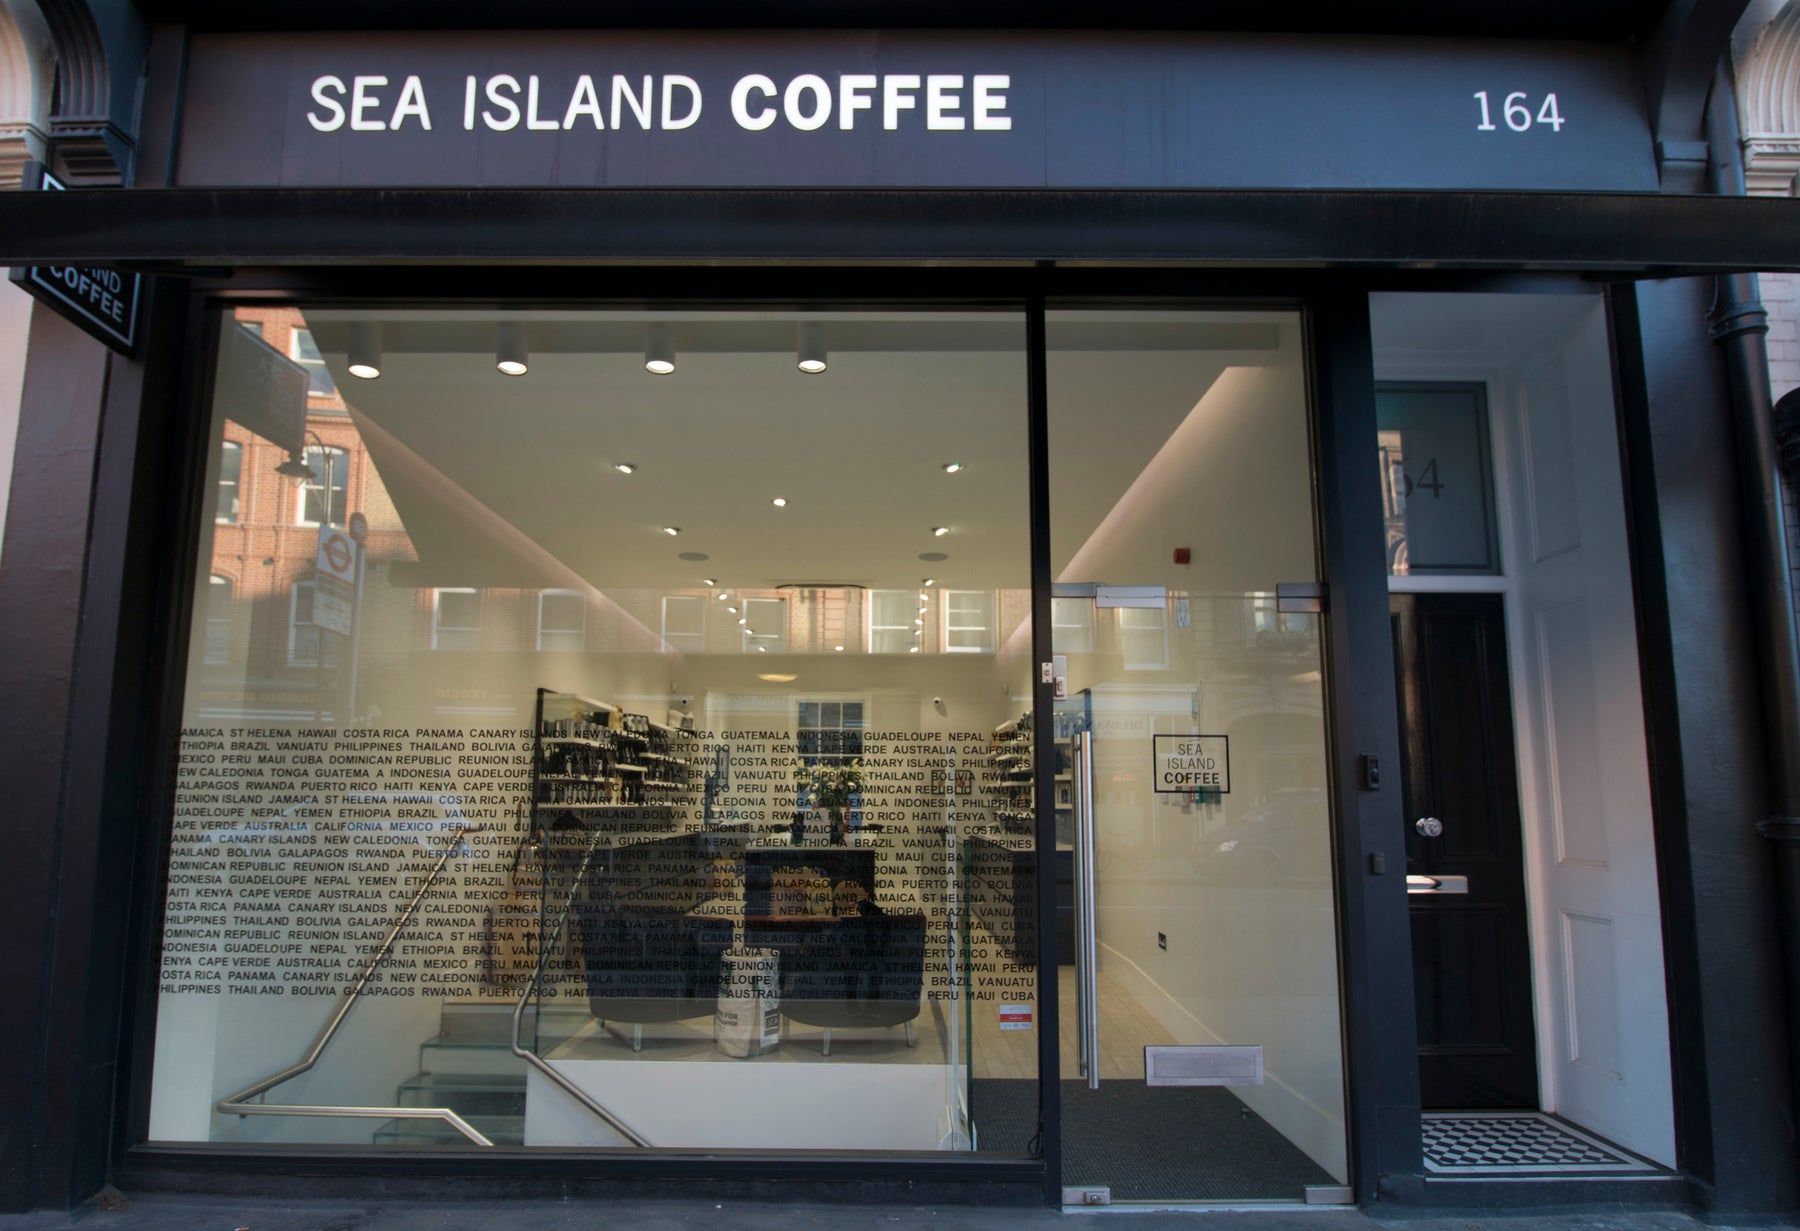 Outside of Sea Island Coffee shop in London